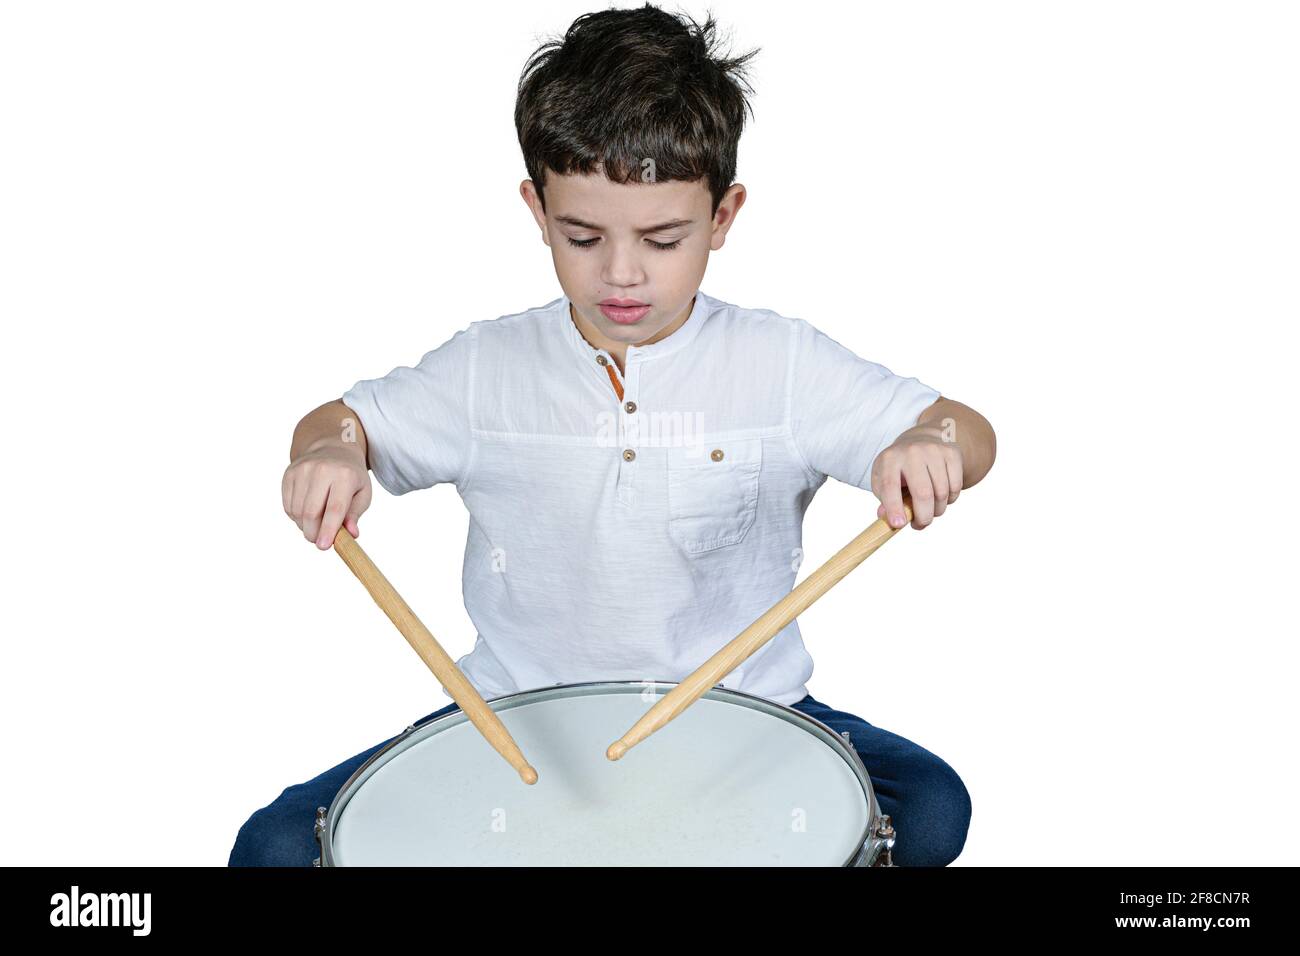 Das 7-jährige Kind konzentrierte sich auf seinen ersten Trommelunterricht. Weißer Hintergrund. Stockfoto